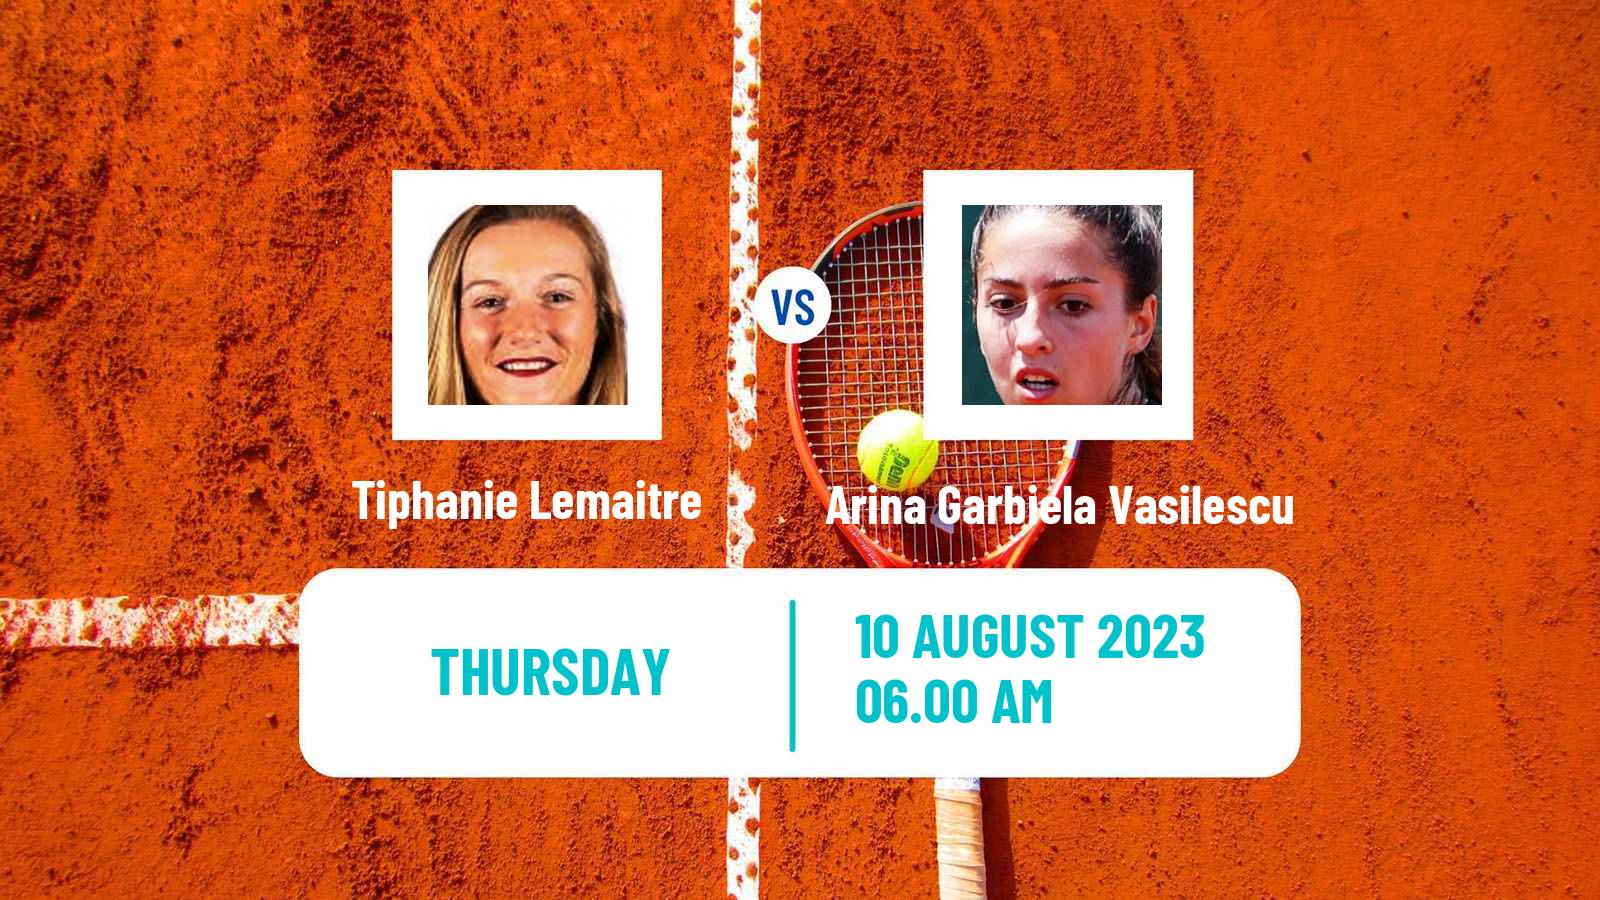 Tennis ITF W25 H Leipzig Women Tiphanie Lemaitre - Arina Garbiela Vasilescu